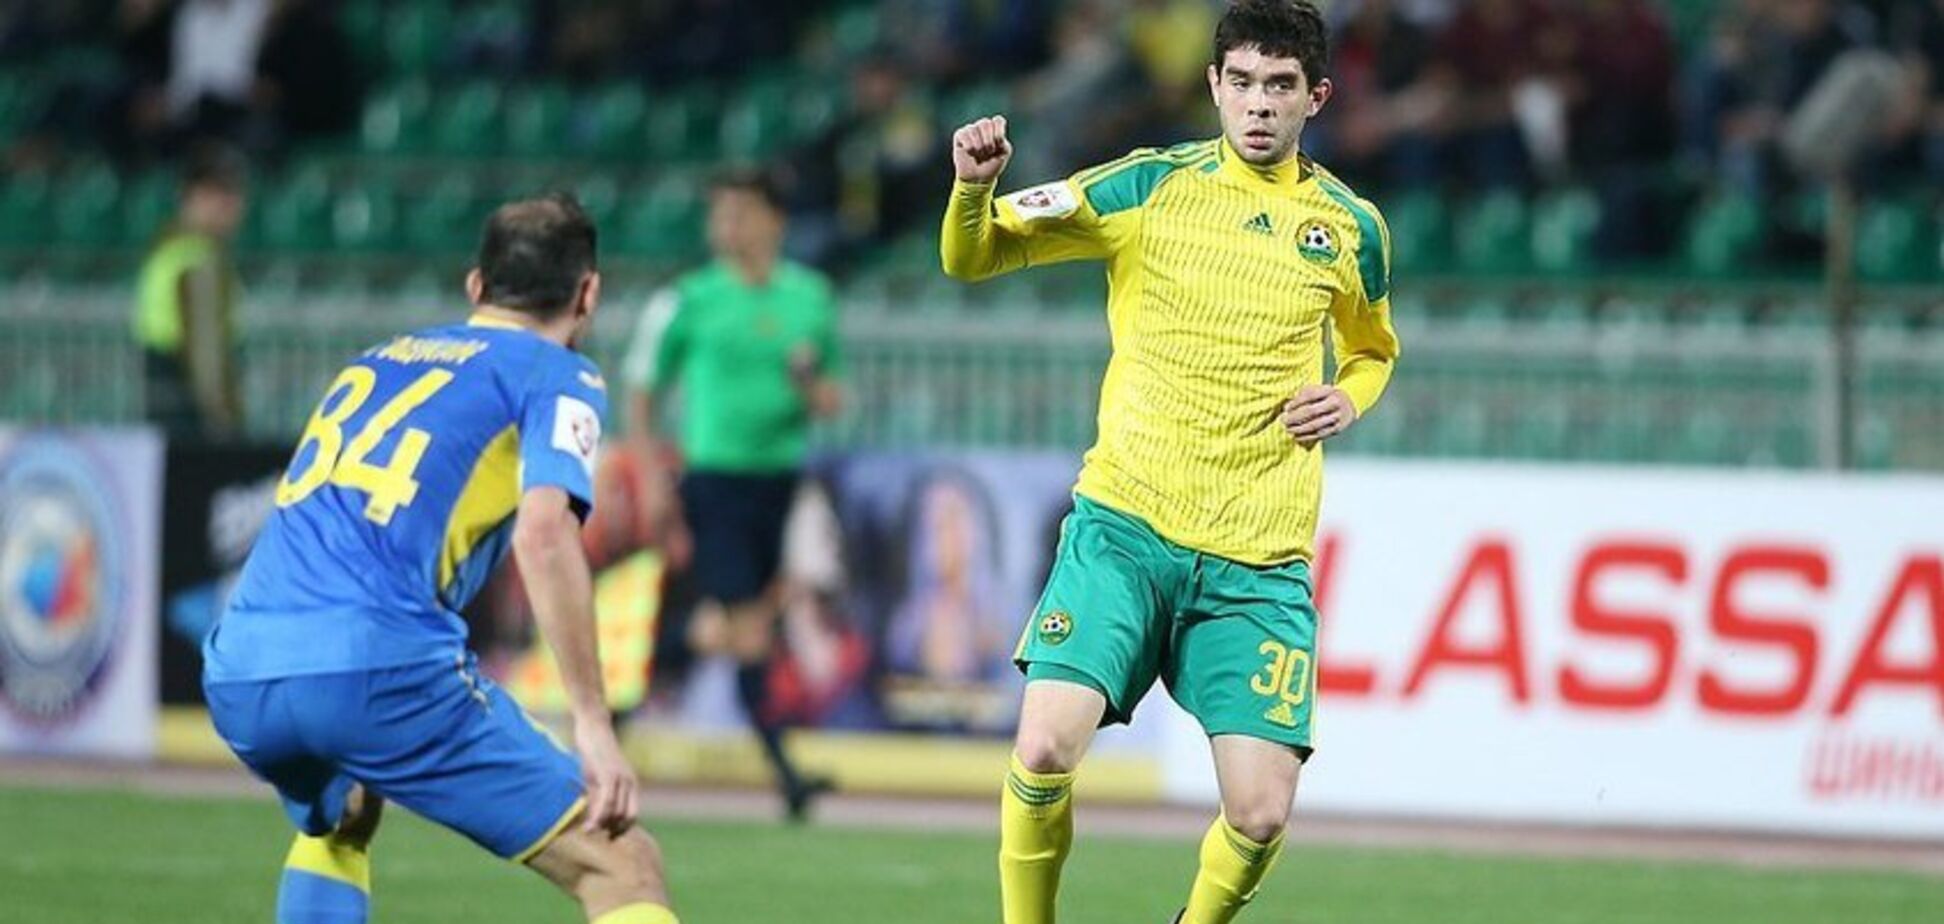 Український футболіст забив фантастичний гол п'ятою - опубліковано відео